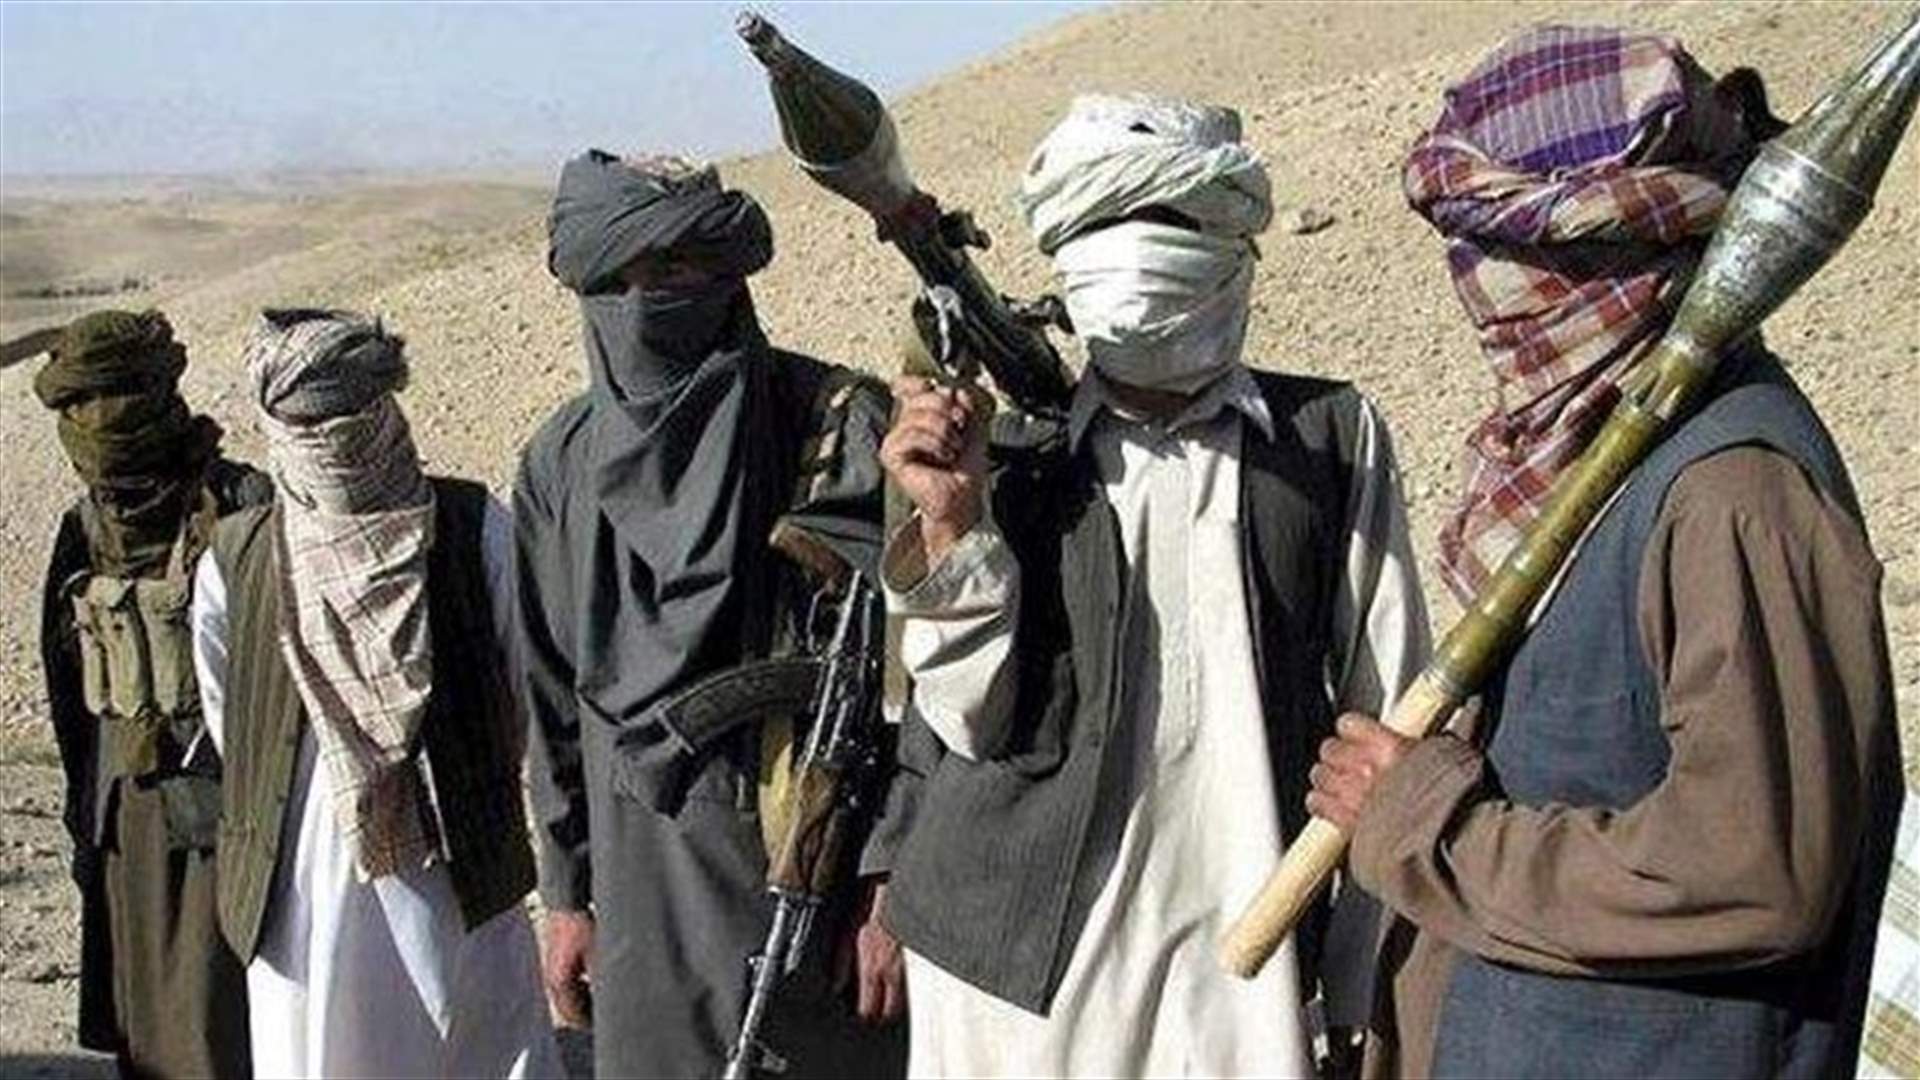 قتلى من قوات الأمن في هجوم نسب الى حركة طالبان في أفغانستان